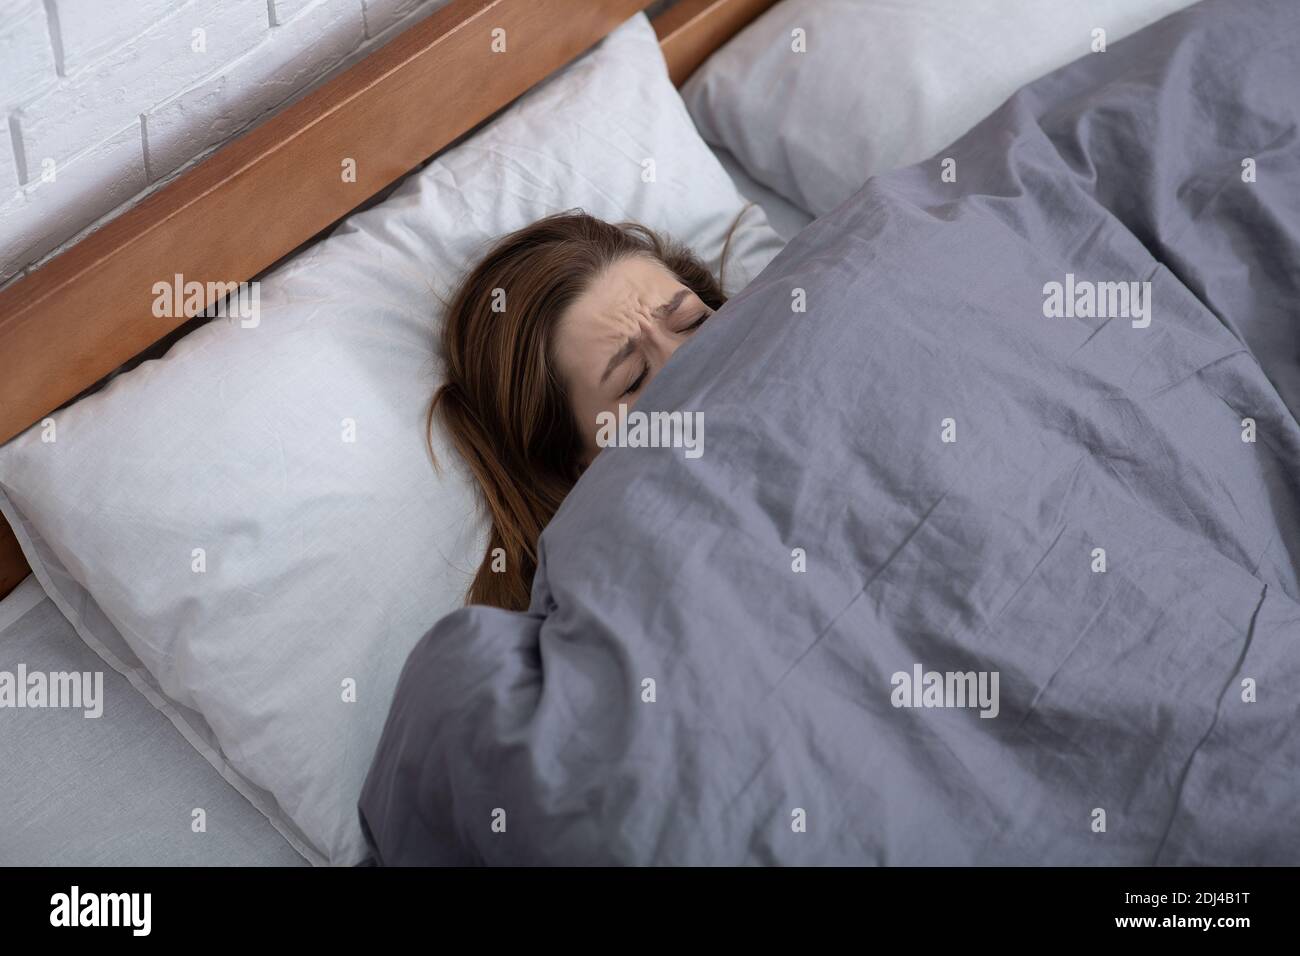 Concept de santé mentale. Jeune femme dépressive se cachant sous une couverture sur le lit, souffrant de dépression, de stress ou d'insomnie Banque D'Images